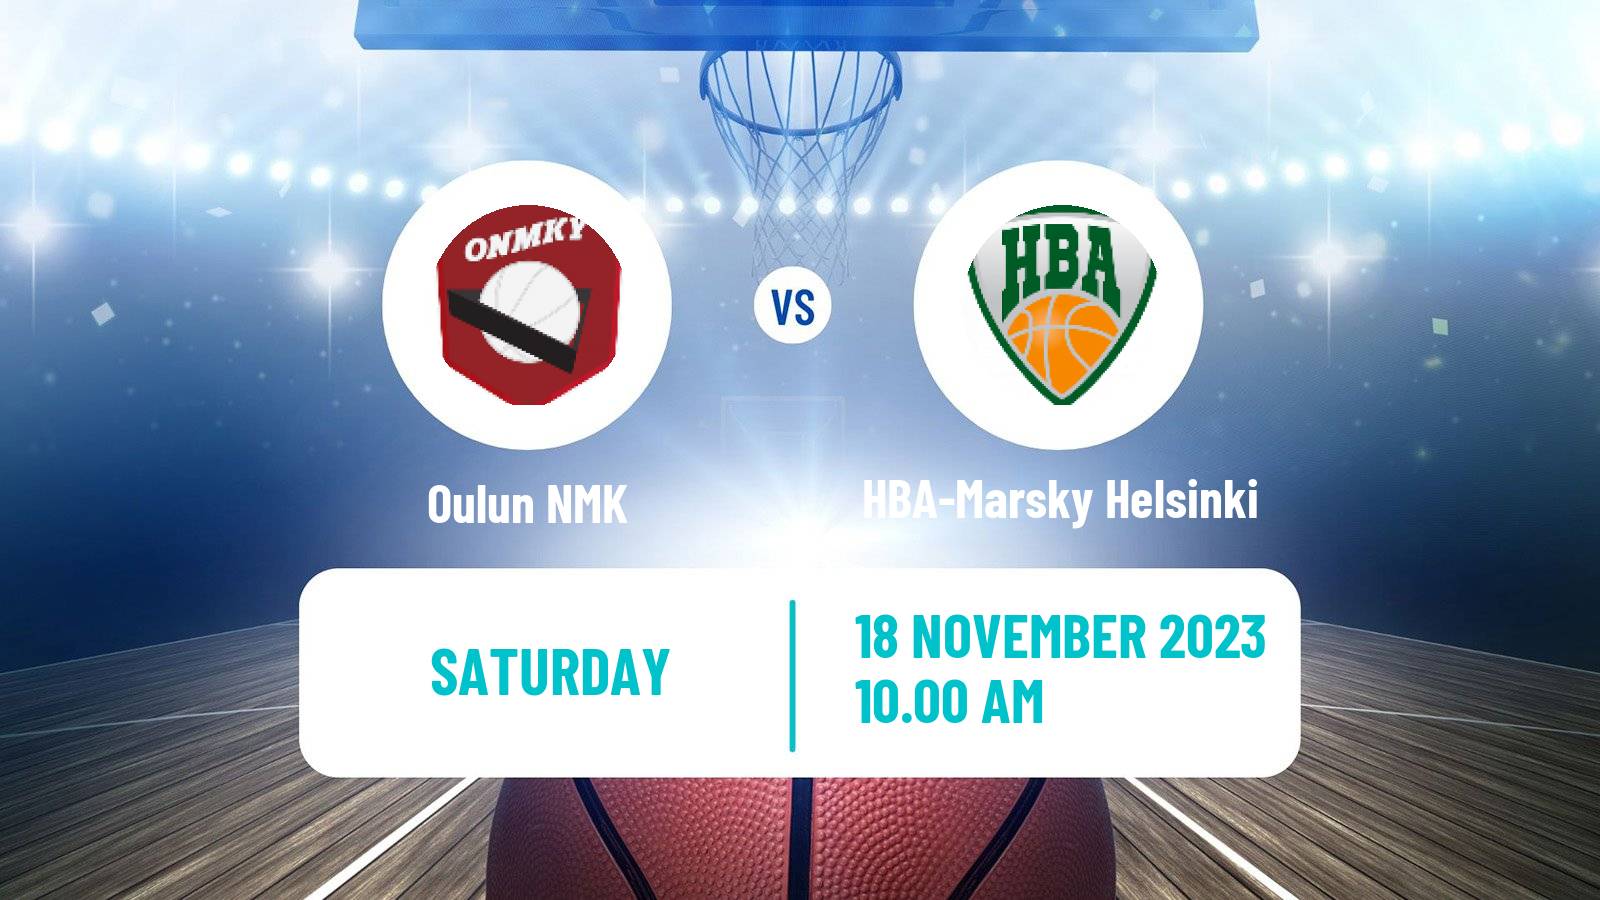 Basketball Finnish I Divisioona A Basketball Oulun NMK - HBA-Marsky Helsinki